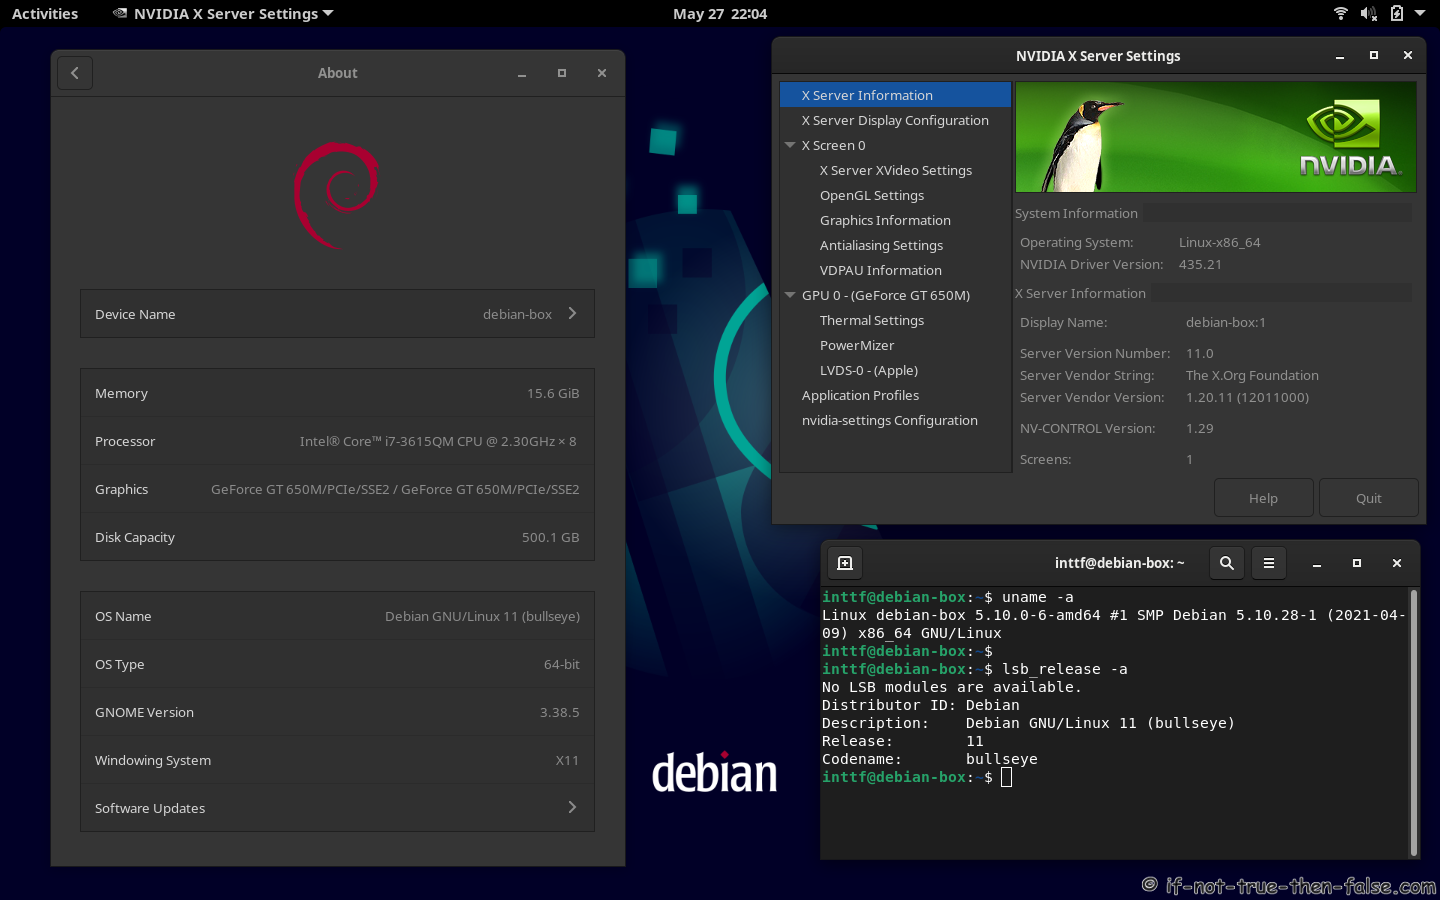 NVIDIA 435.21 Running on Debian Bullseye 11 Gnome 3.38.5